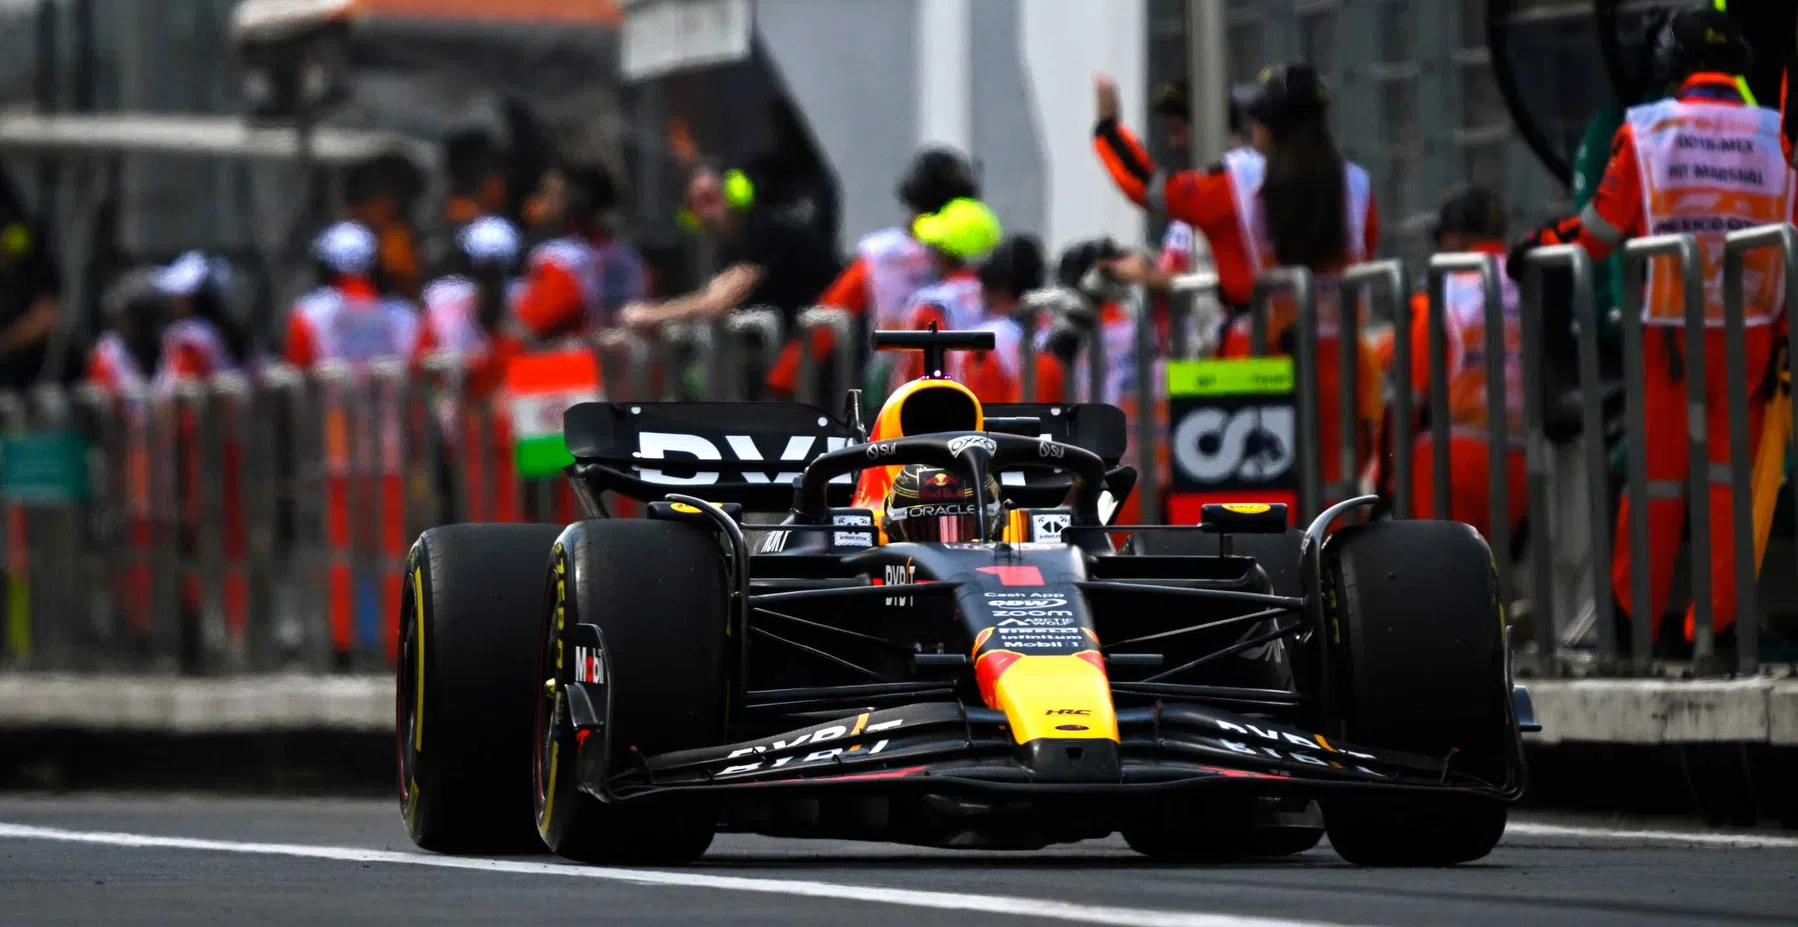 La FIA interviene dopo l'azione di Verstappen